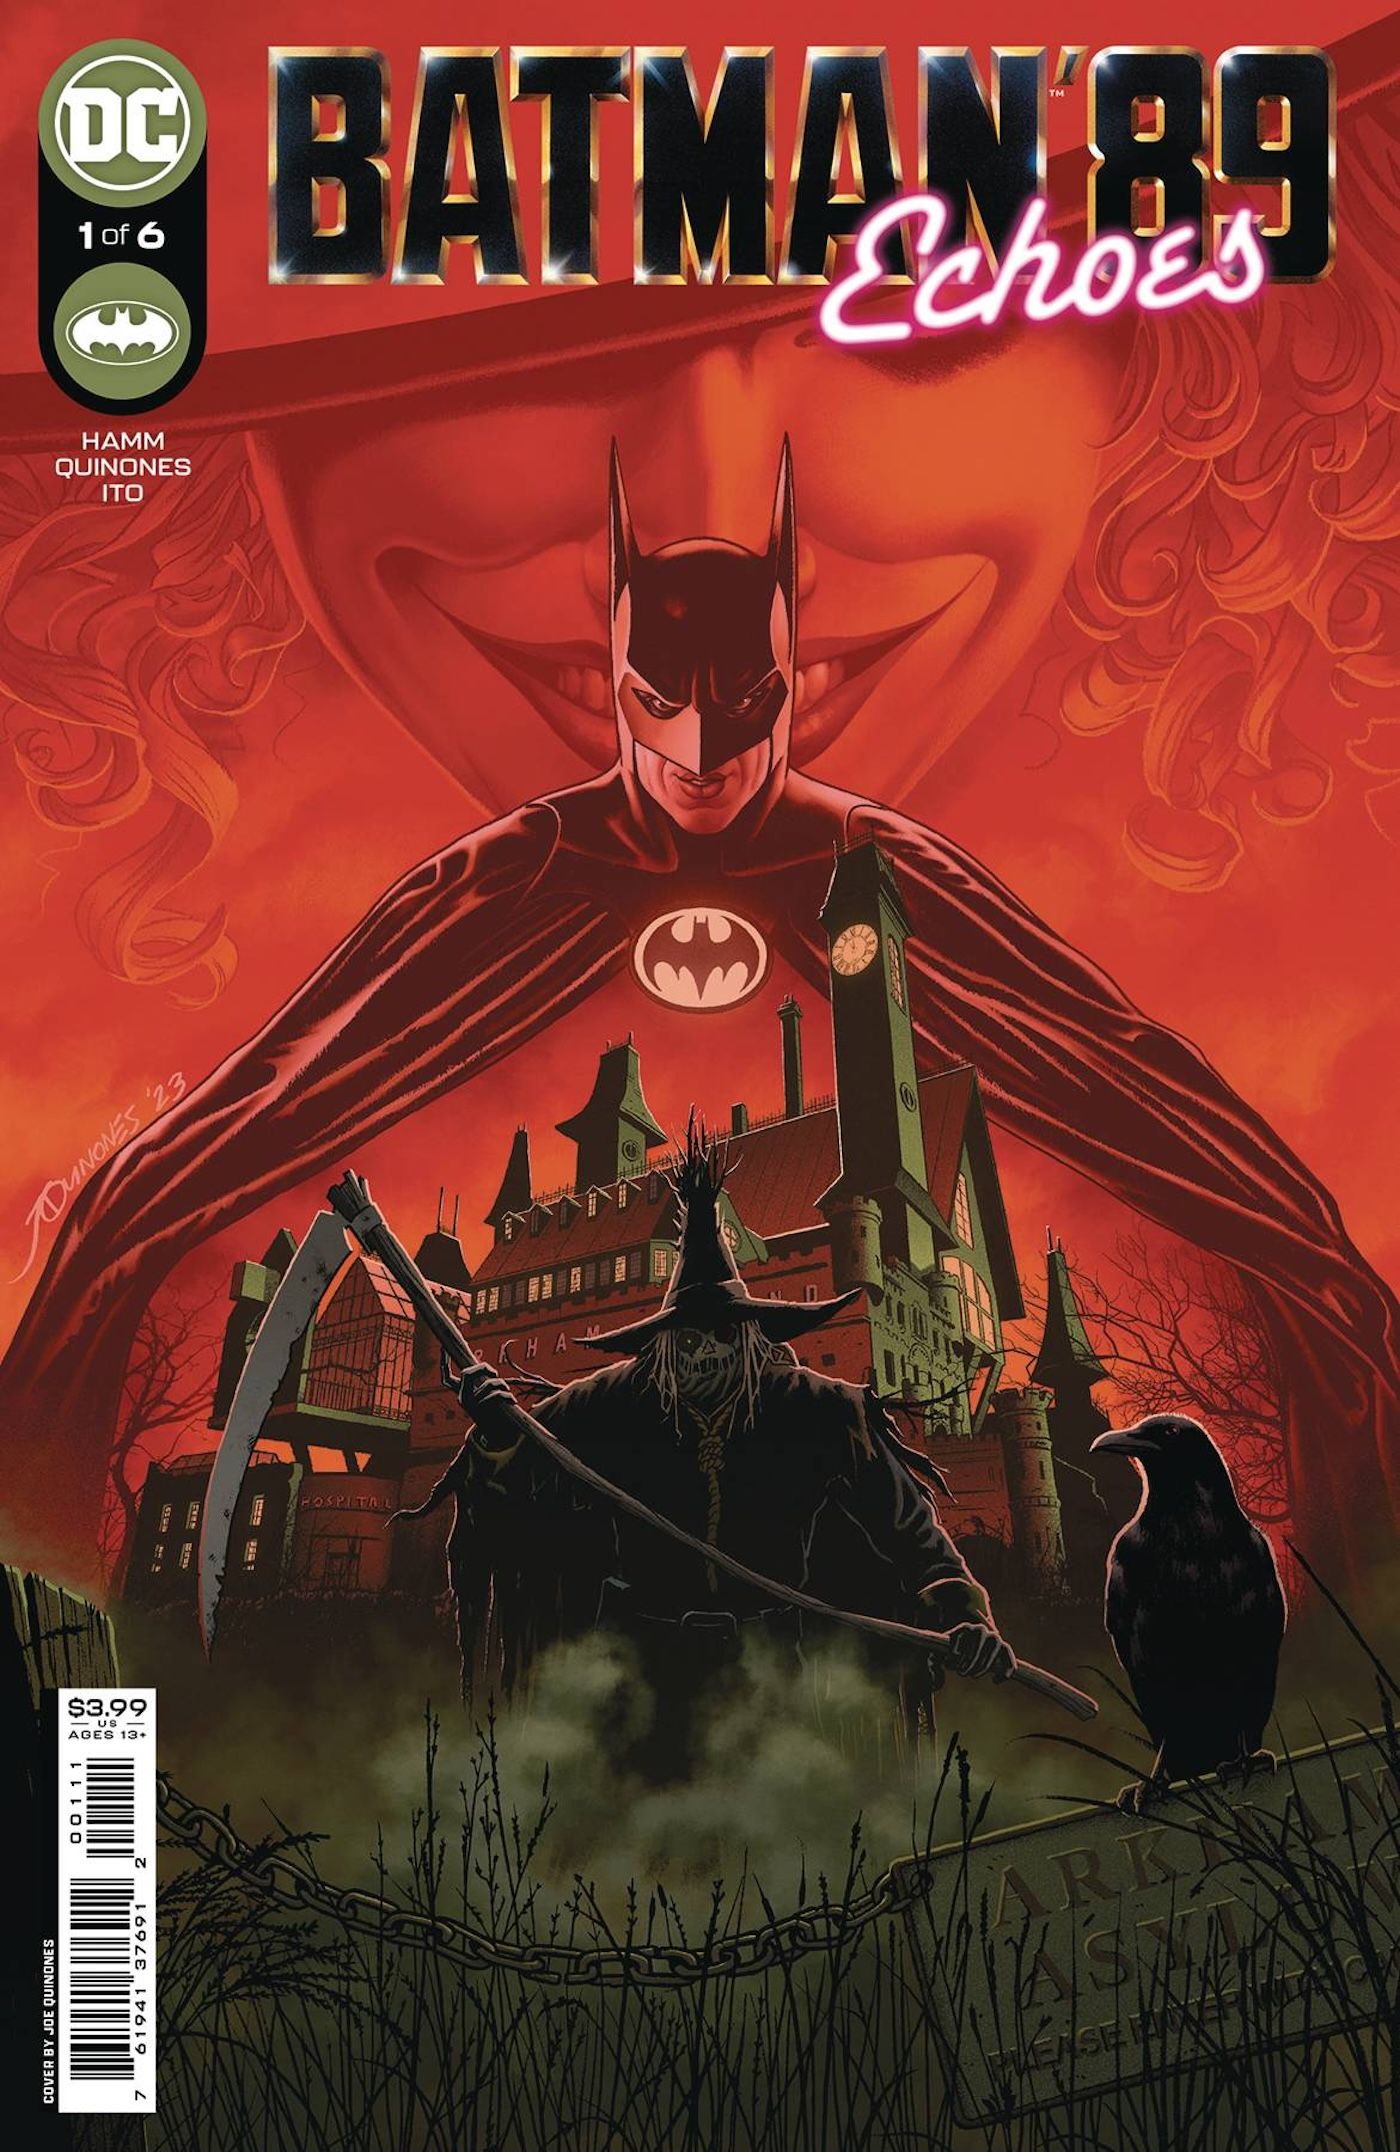 Batman 89 Echoes 1 Capa principal: Batman e Espantalho com fundo vermelho.